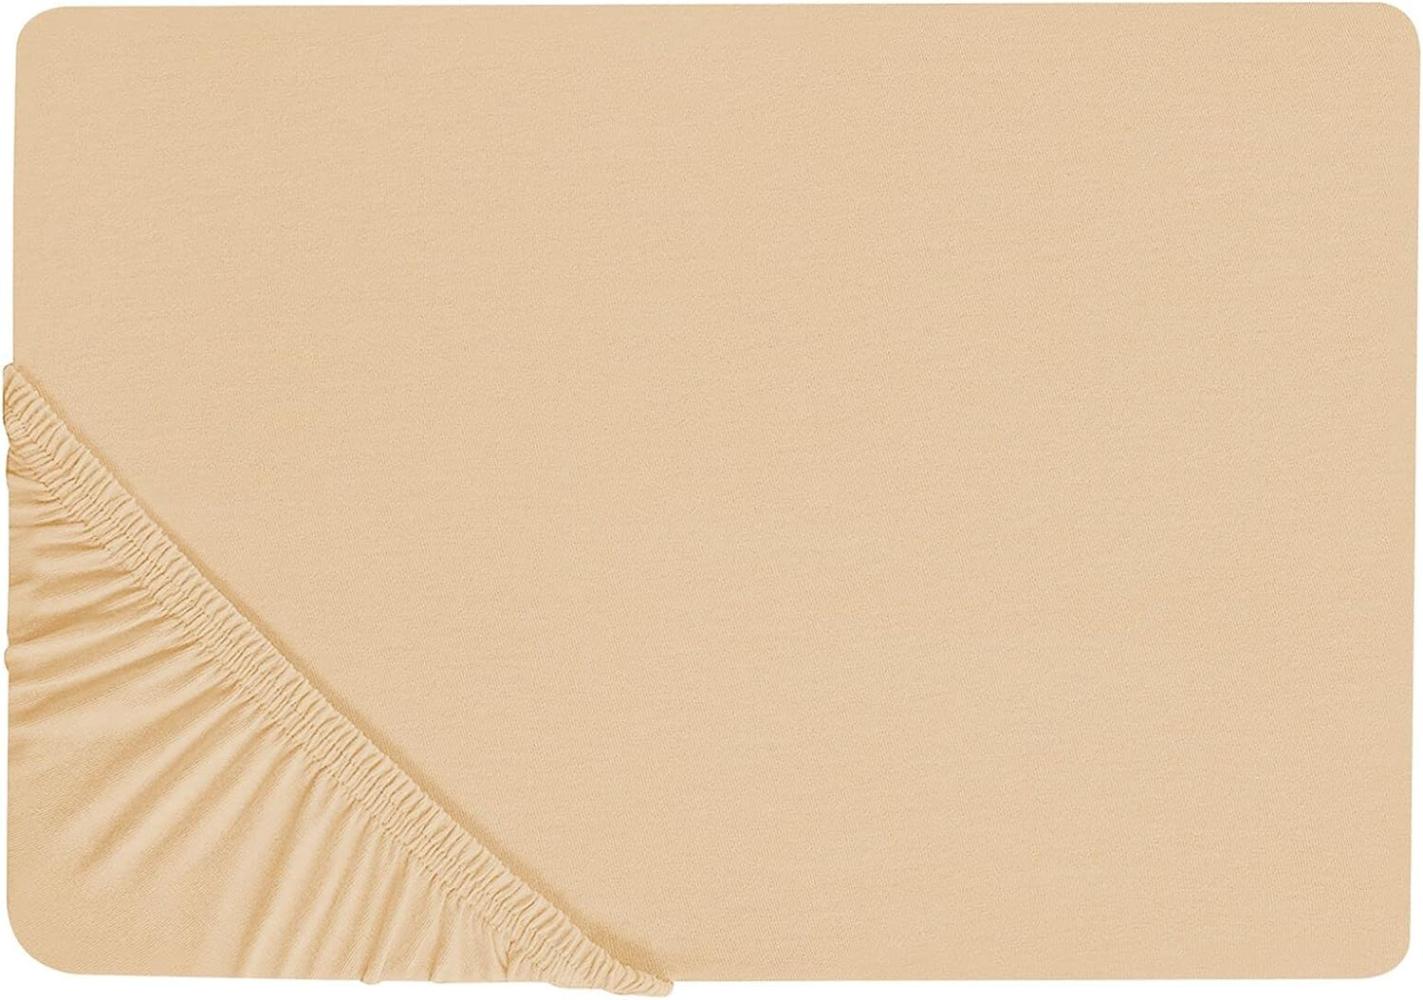 Spannbettlaken Baumwolle sandbeige 180 x 200 cm JANBU Bild 1